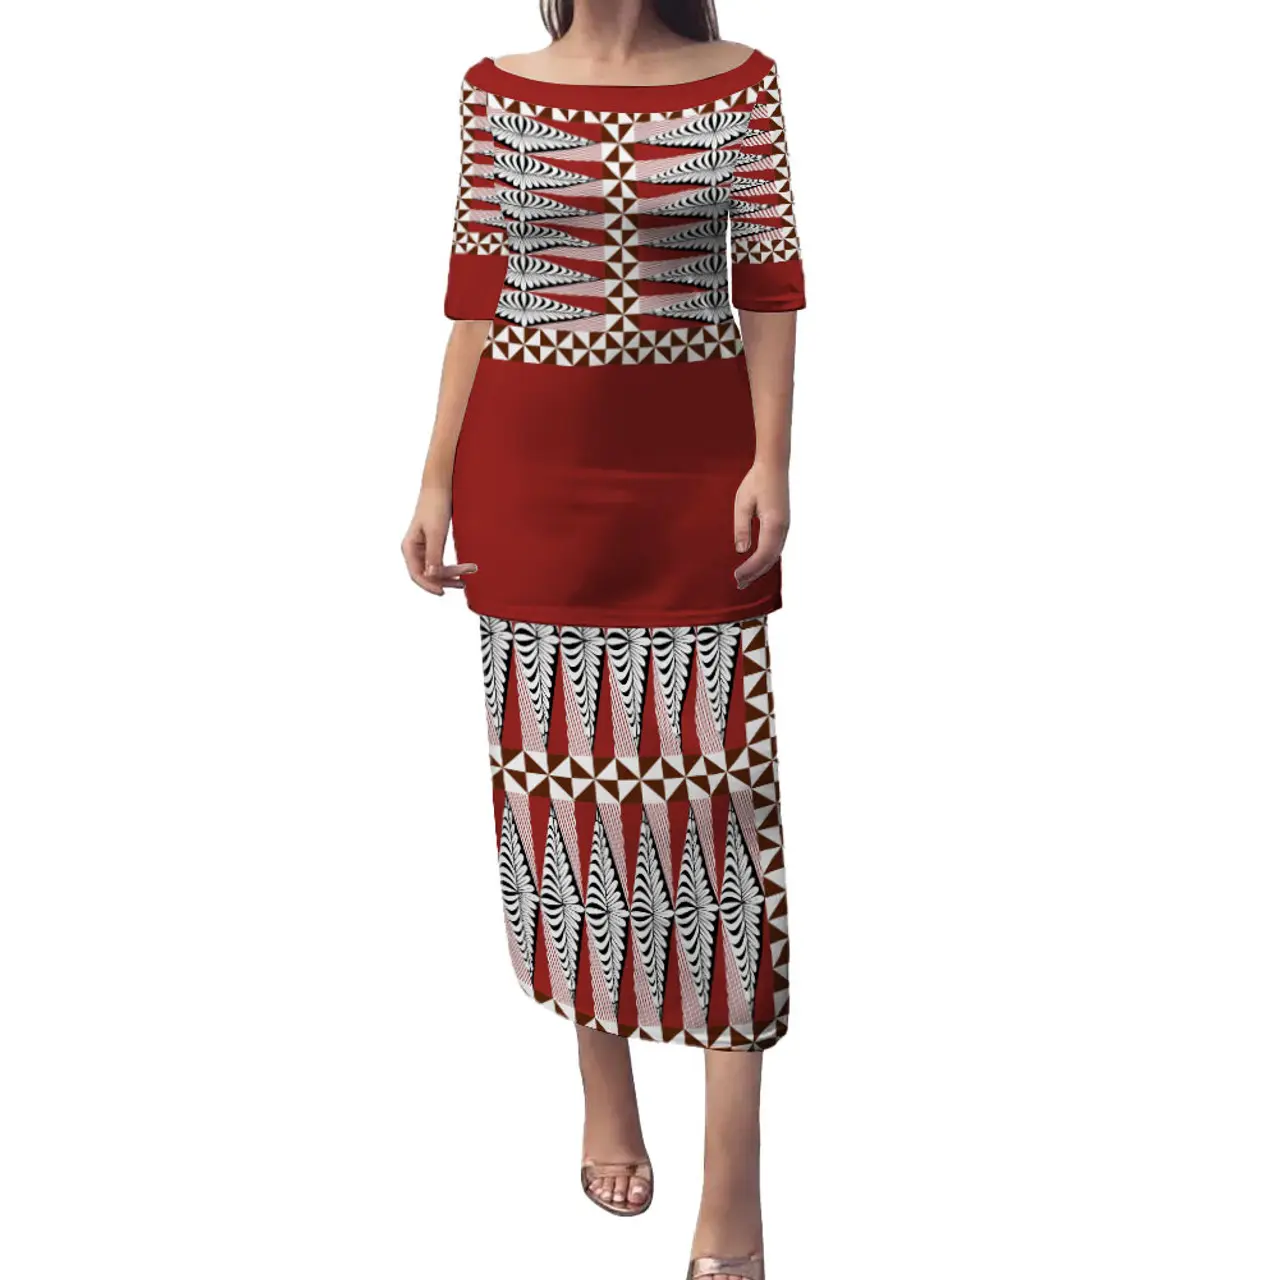 Drop Shipping kadınlar elbise Tonga pupusi geleneksel desenler özel tasarım yüksek kalite büyük boy kadin elbise